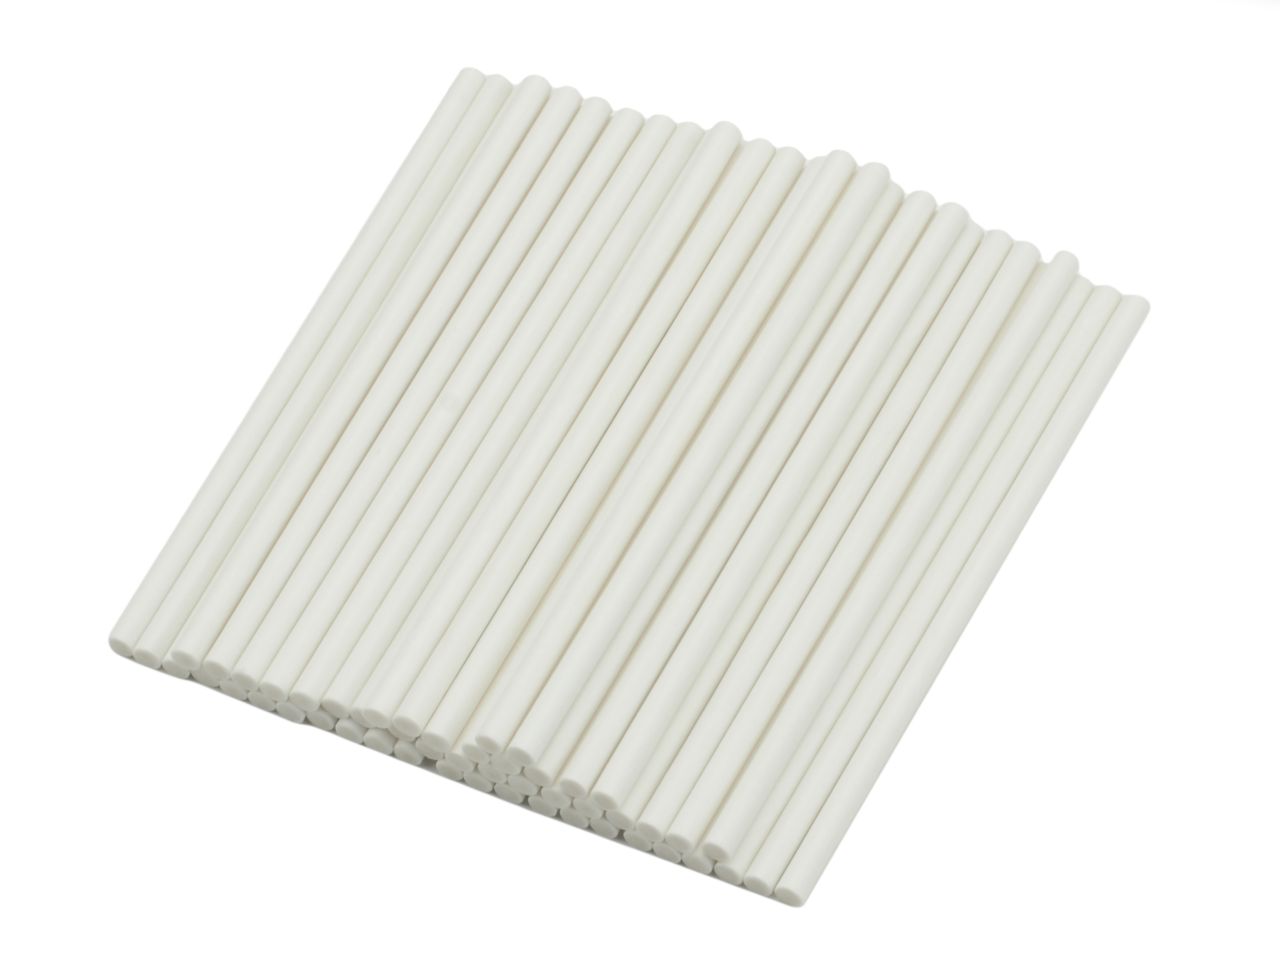 CakePopstiele / Lutscherstiele, weiß, 50 Stück, ca. 10 cm